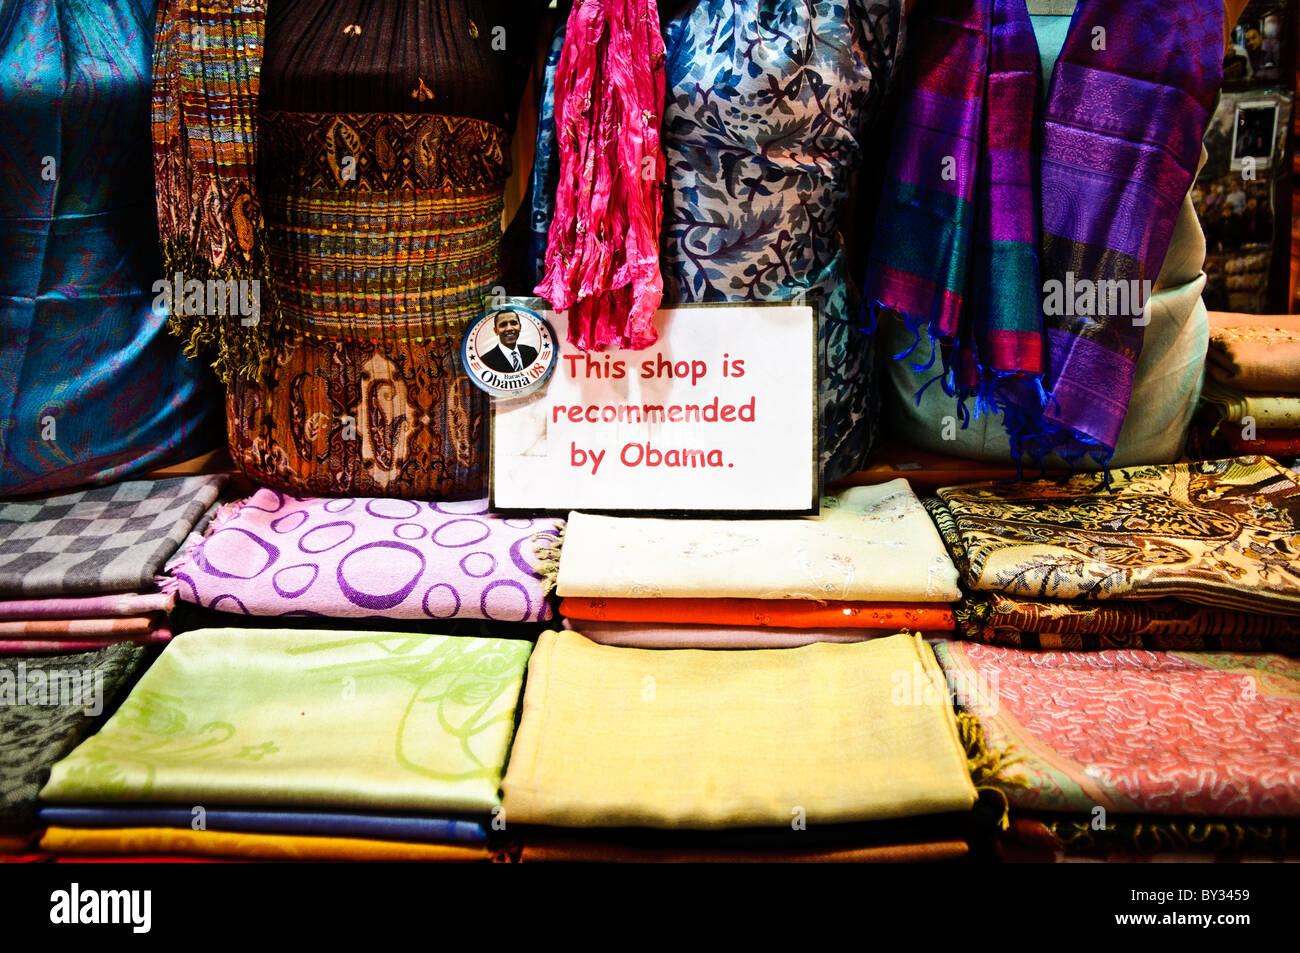 Un foulard di seta in negozio il Bazar delle Spezie (noto anche come il  Bazaar Egyption) ad Istanbul in Turchia, visualizza un segno dicendo  "Questo negozio è consigliato da Obama' in uno